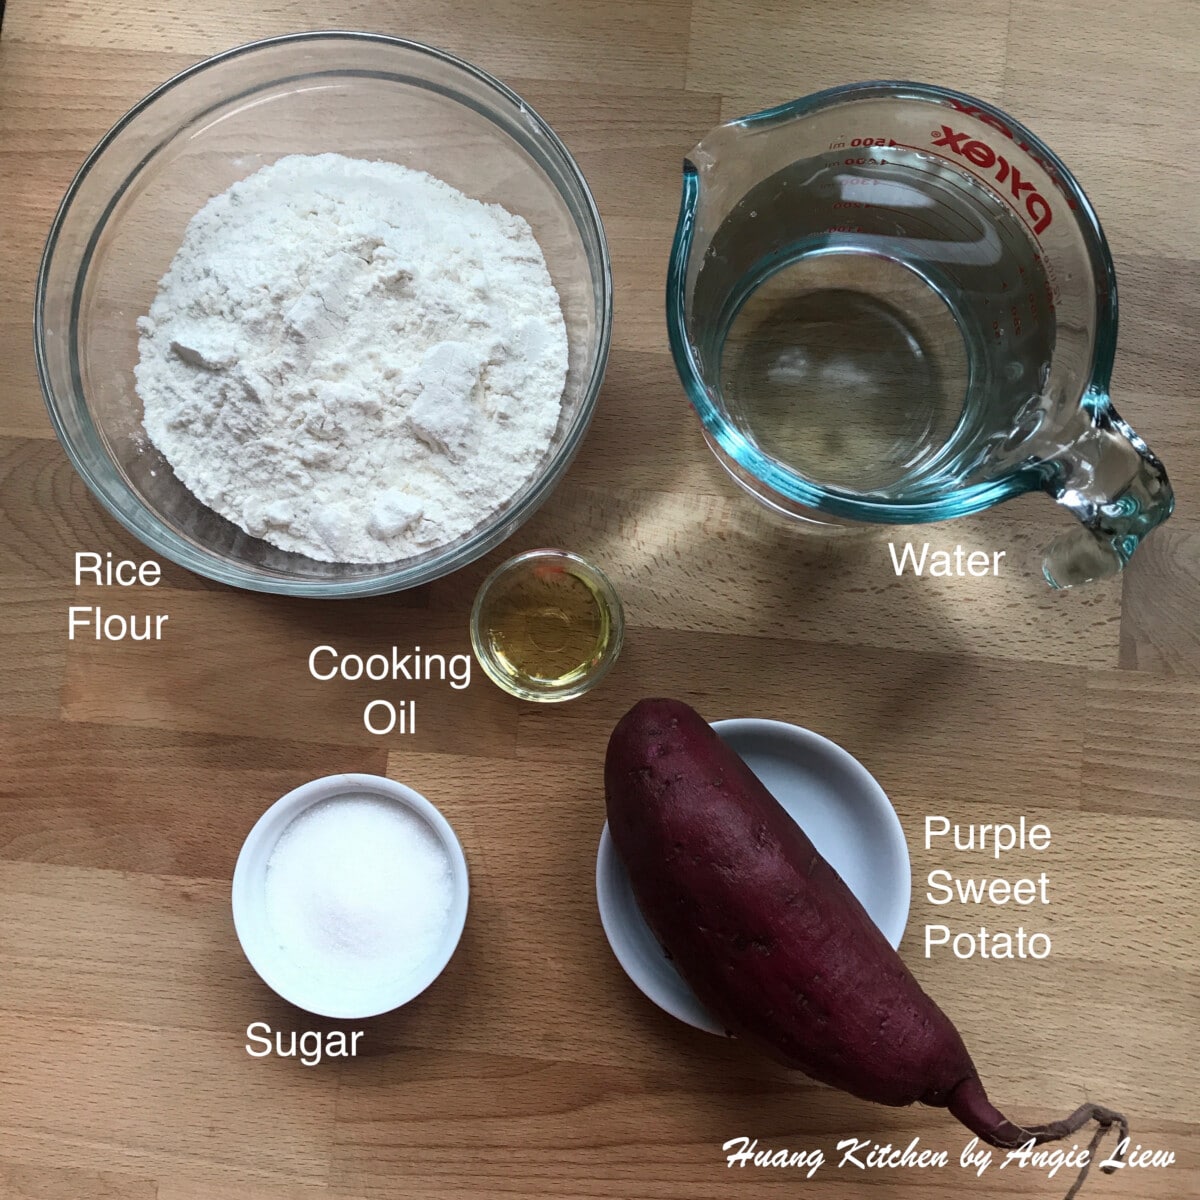 Ingredients to make rice cake batter.